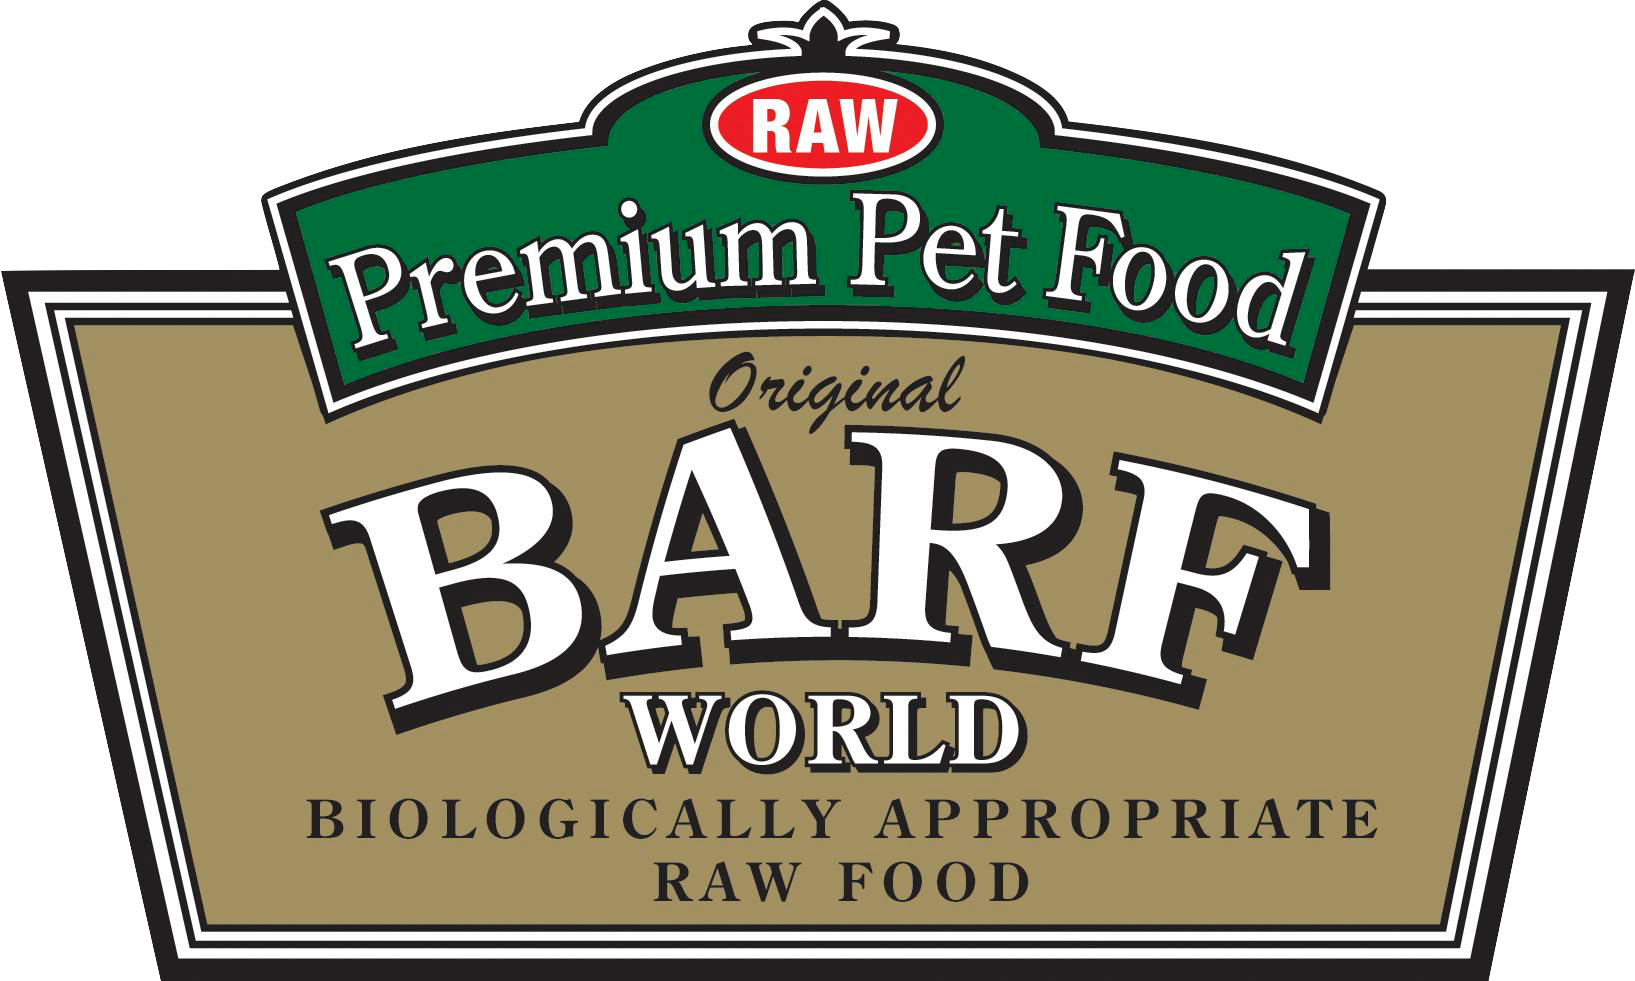 BARF World Original Biologically Appropriate Raw Food logo